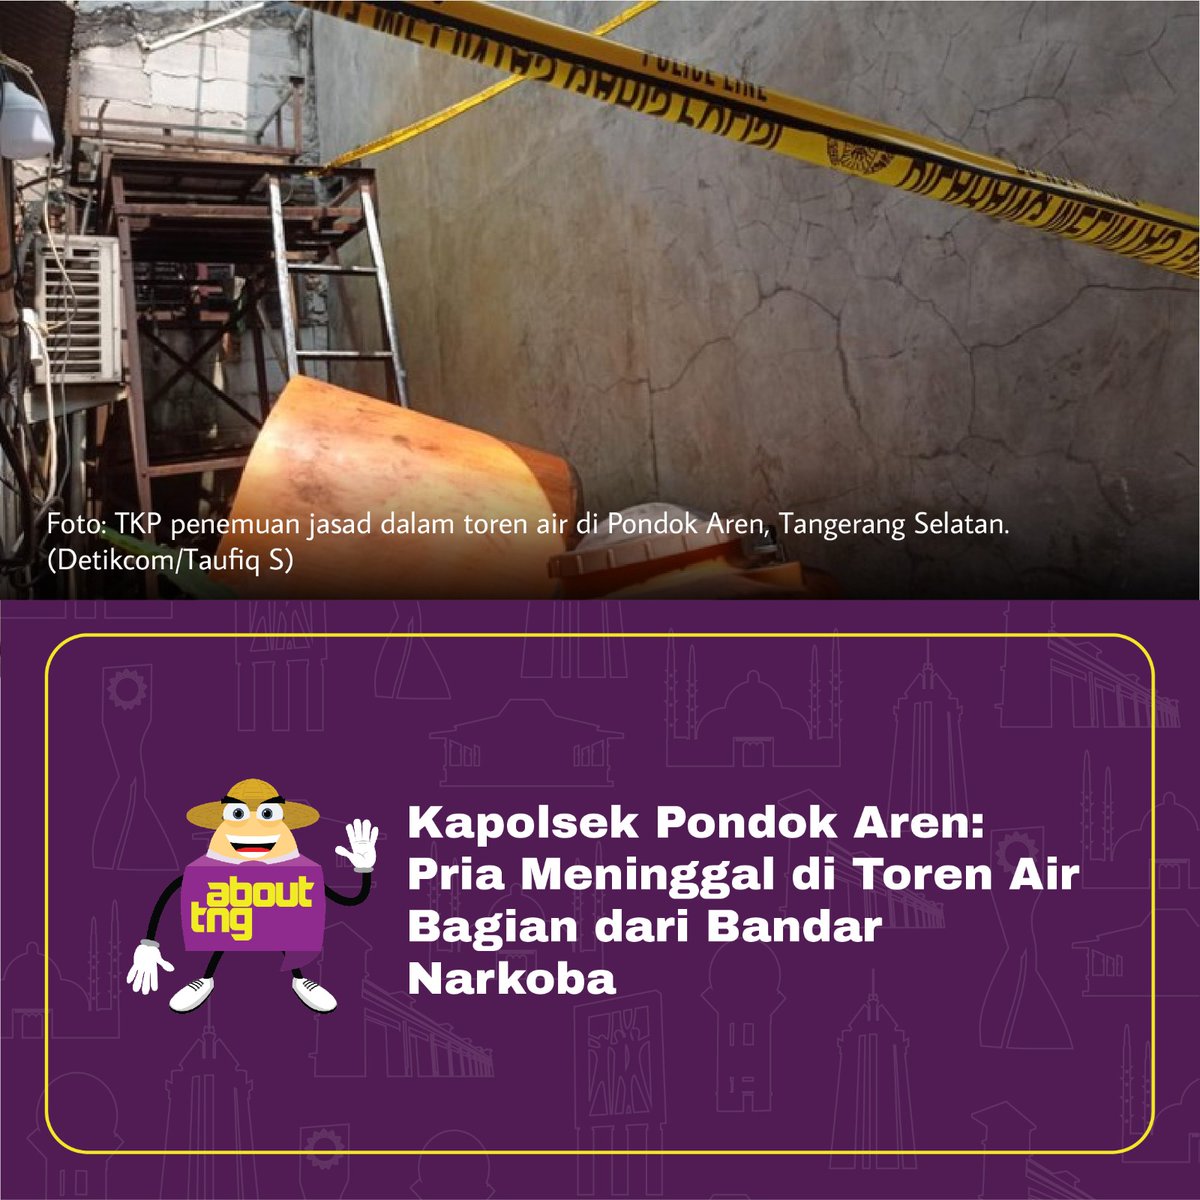 Kasus penemuan jasad dalam toren air di daerah Pondok Aren, Tangerang Selatan, memiliki fakta yang mengejutkan.

Pria berinisial D yang ditemukan meninggal oleh tetangganya itu ternyata merupakan seorang bandar narkoba.

Pernyataan tersebut disampaikan langsung oleh Kapolsek